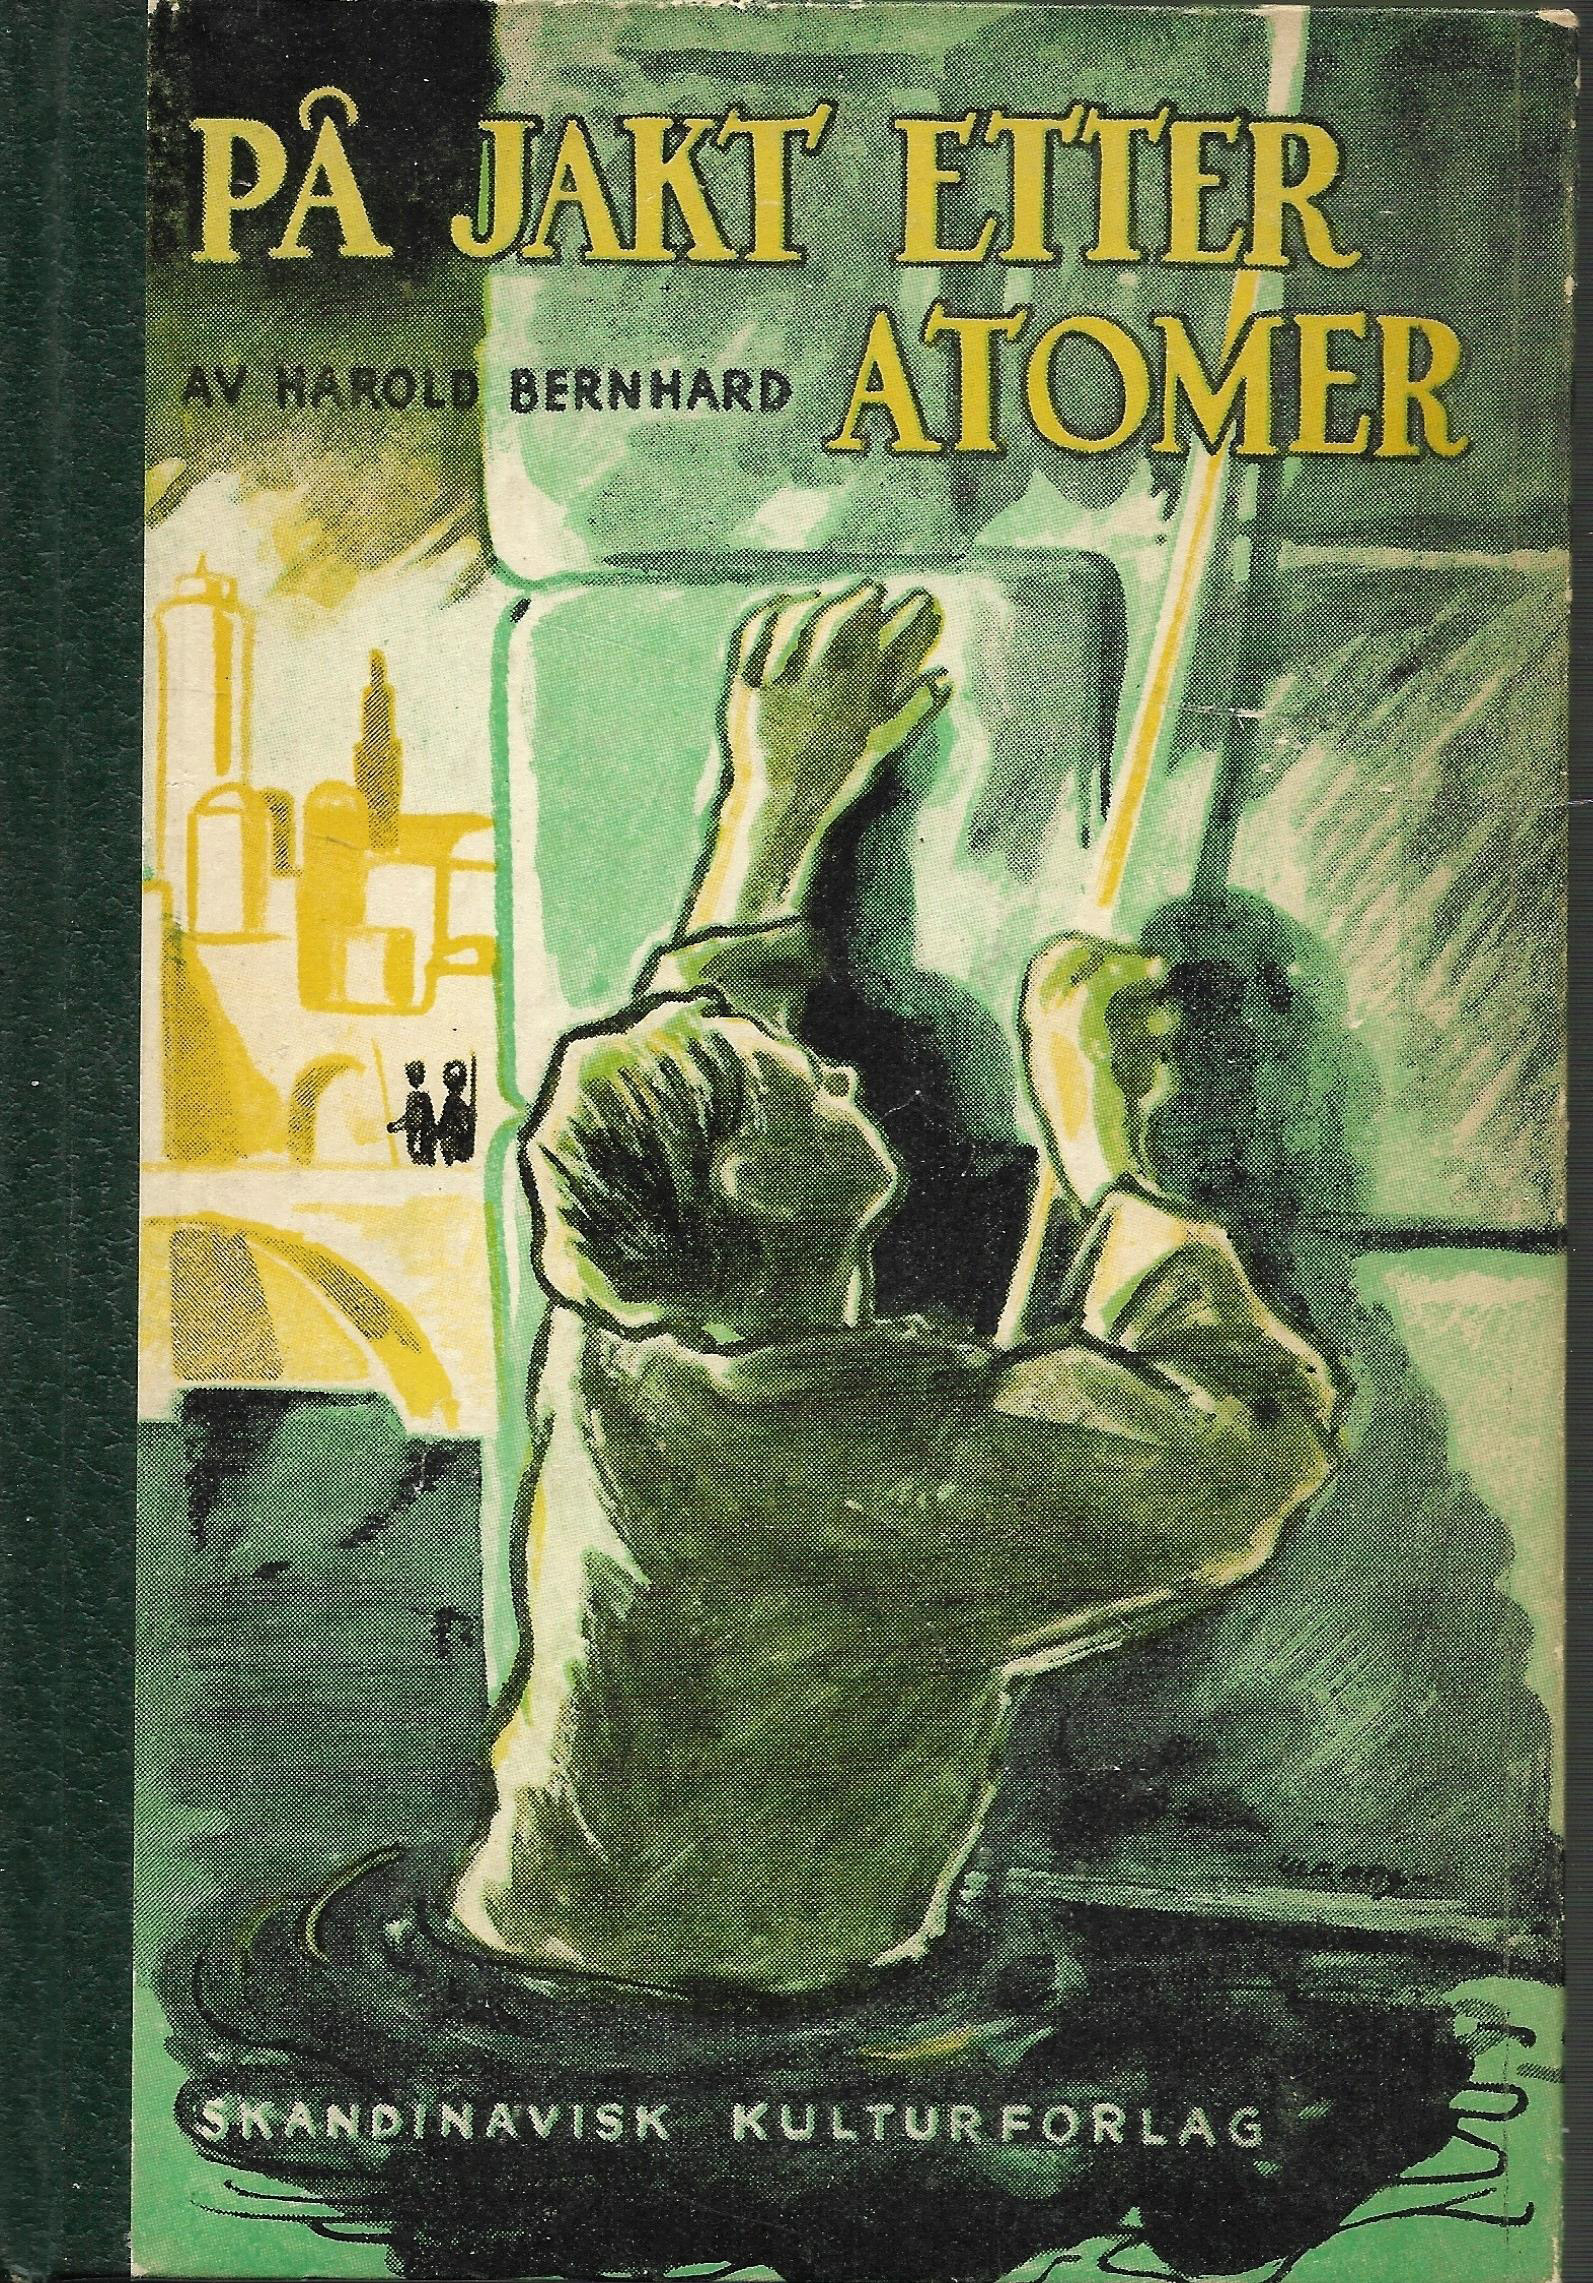 På jakt etter atomer - Harold Bernhard 1946-1